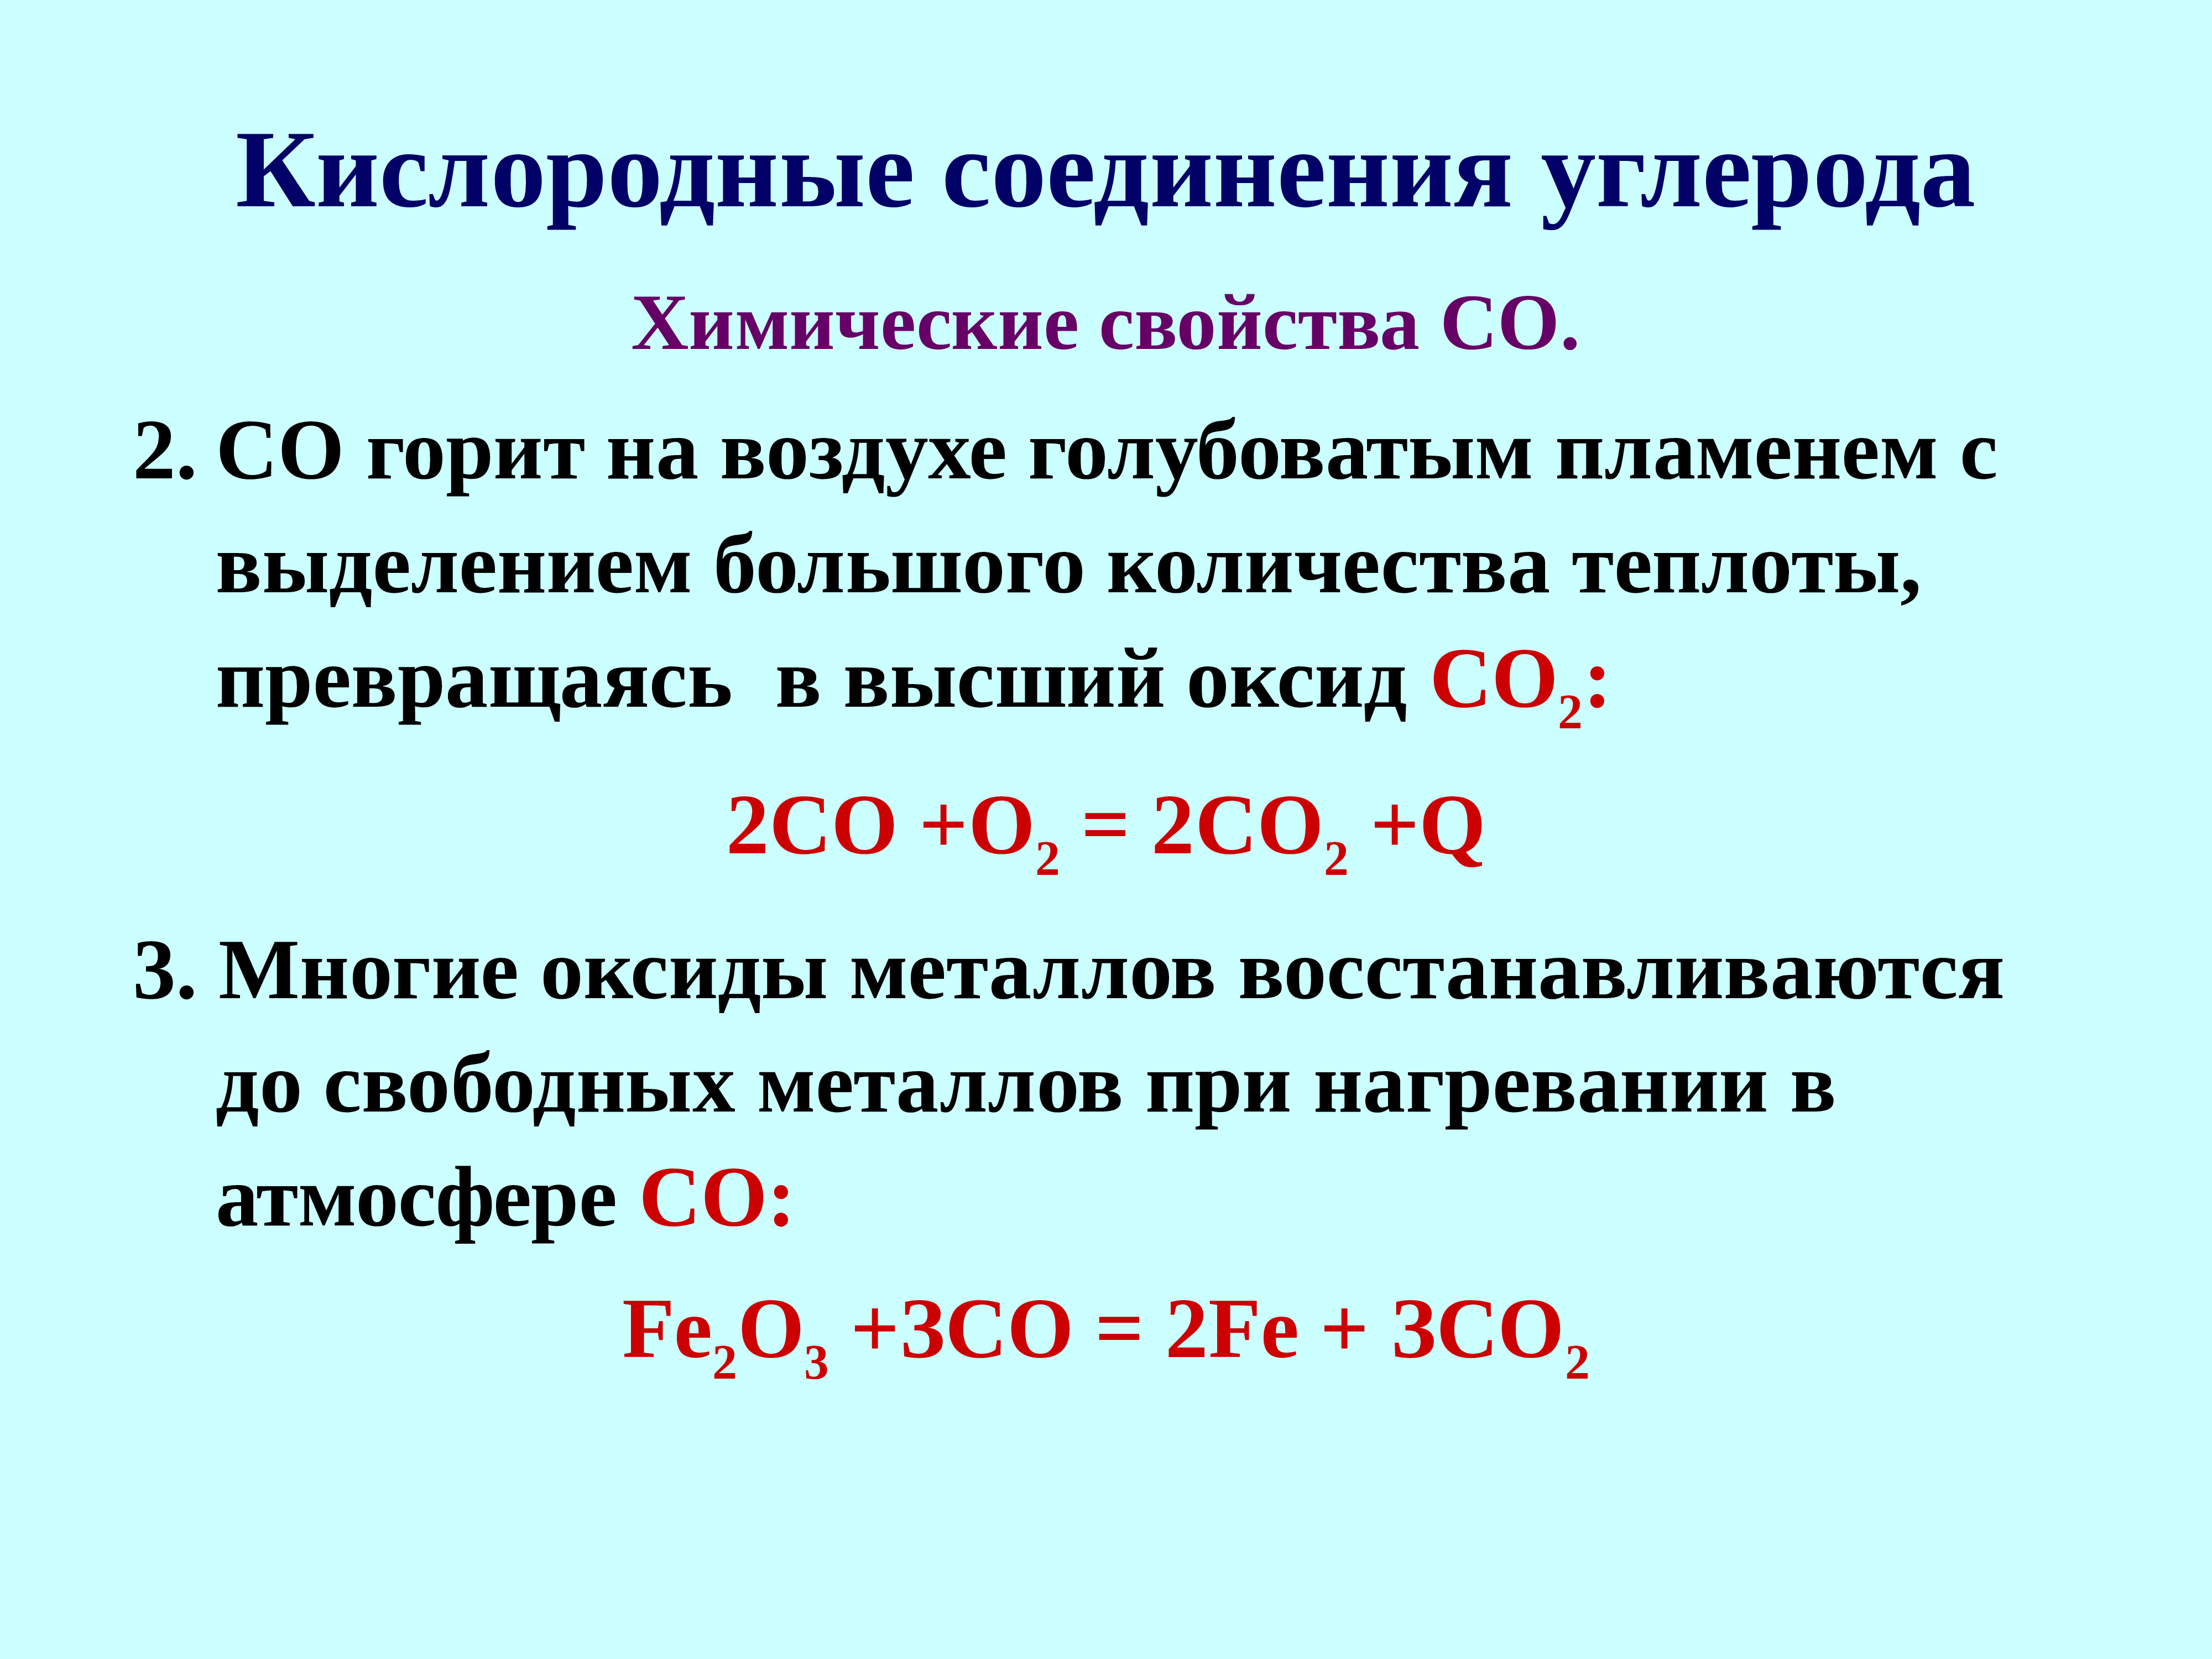 Соединение алюминия с углеродом. Кислородные соединения. Соединения углерода. Кислородные соединения углерода таблица. Кислородные соединения углерода конспект.